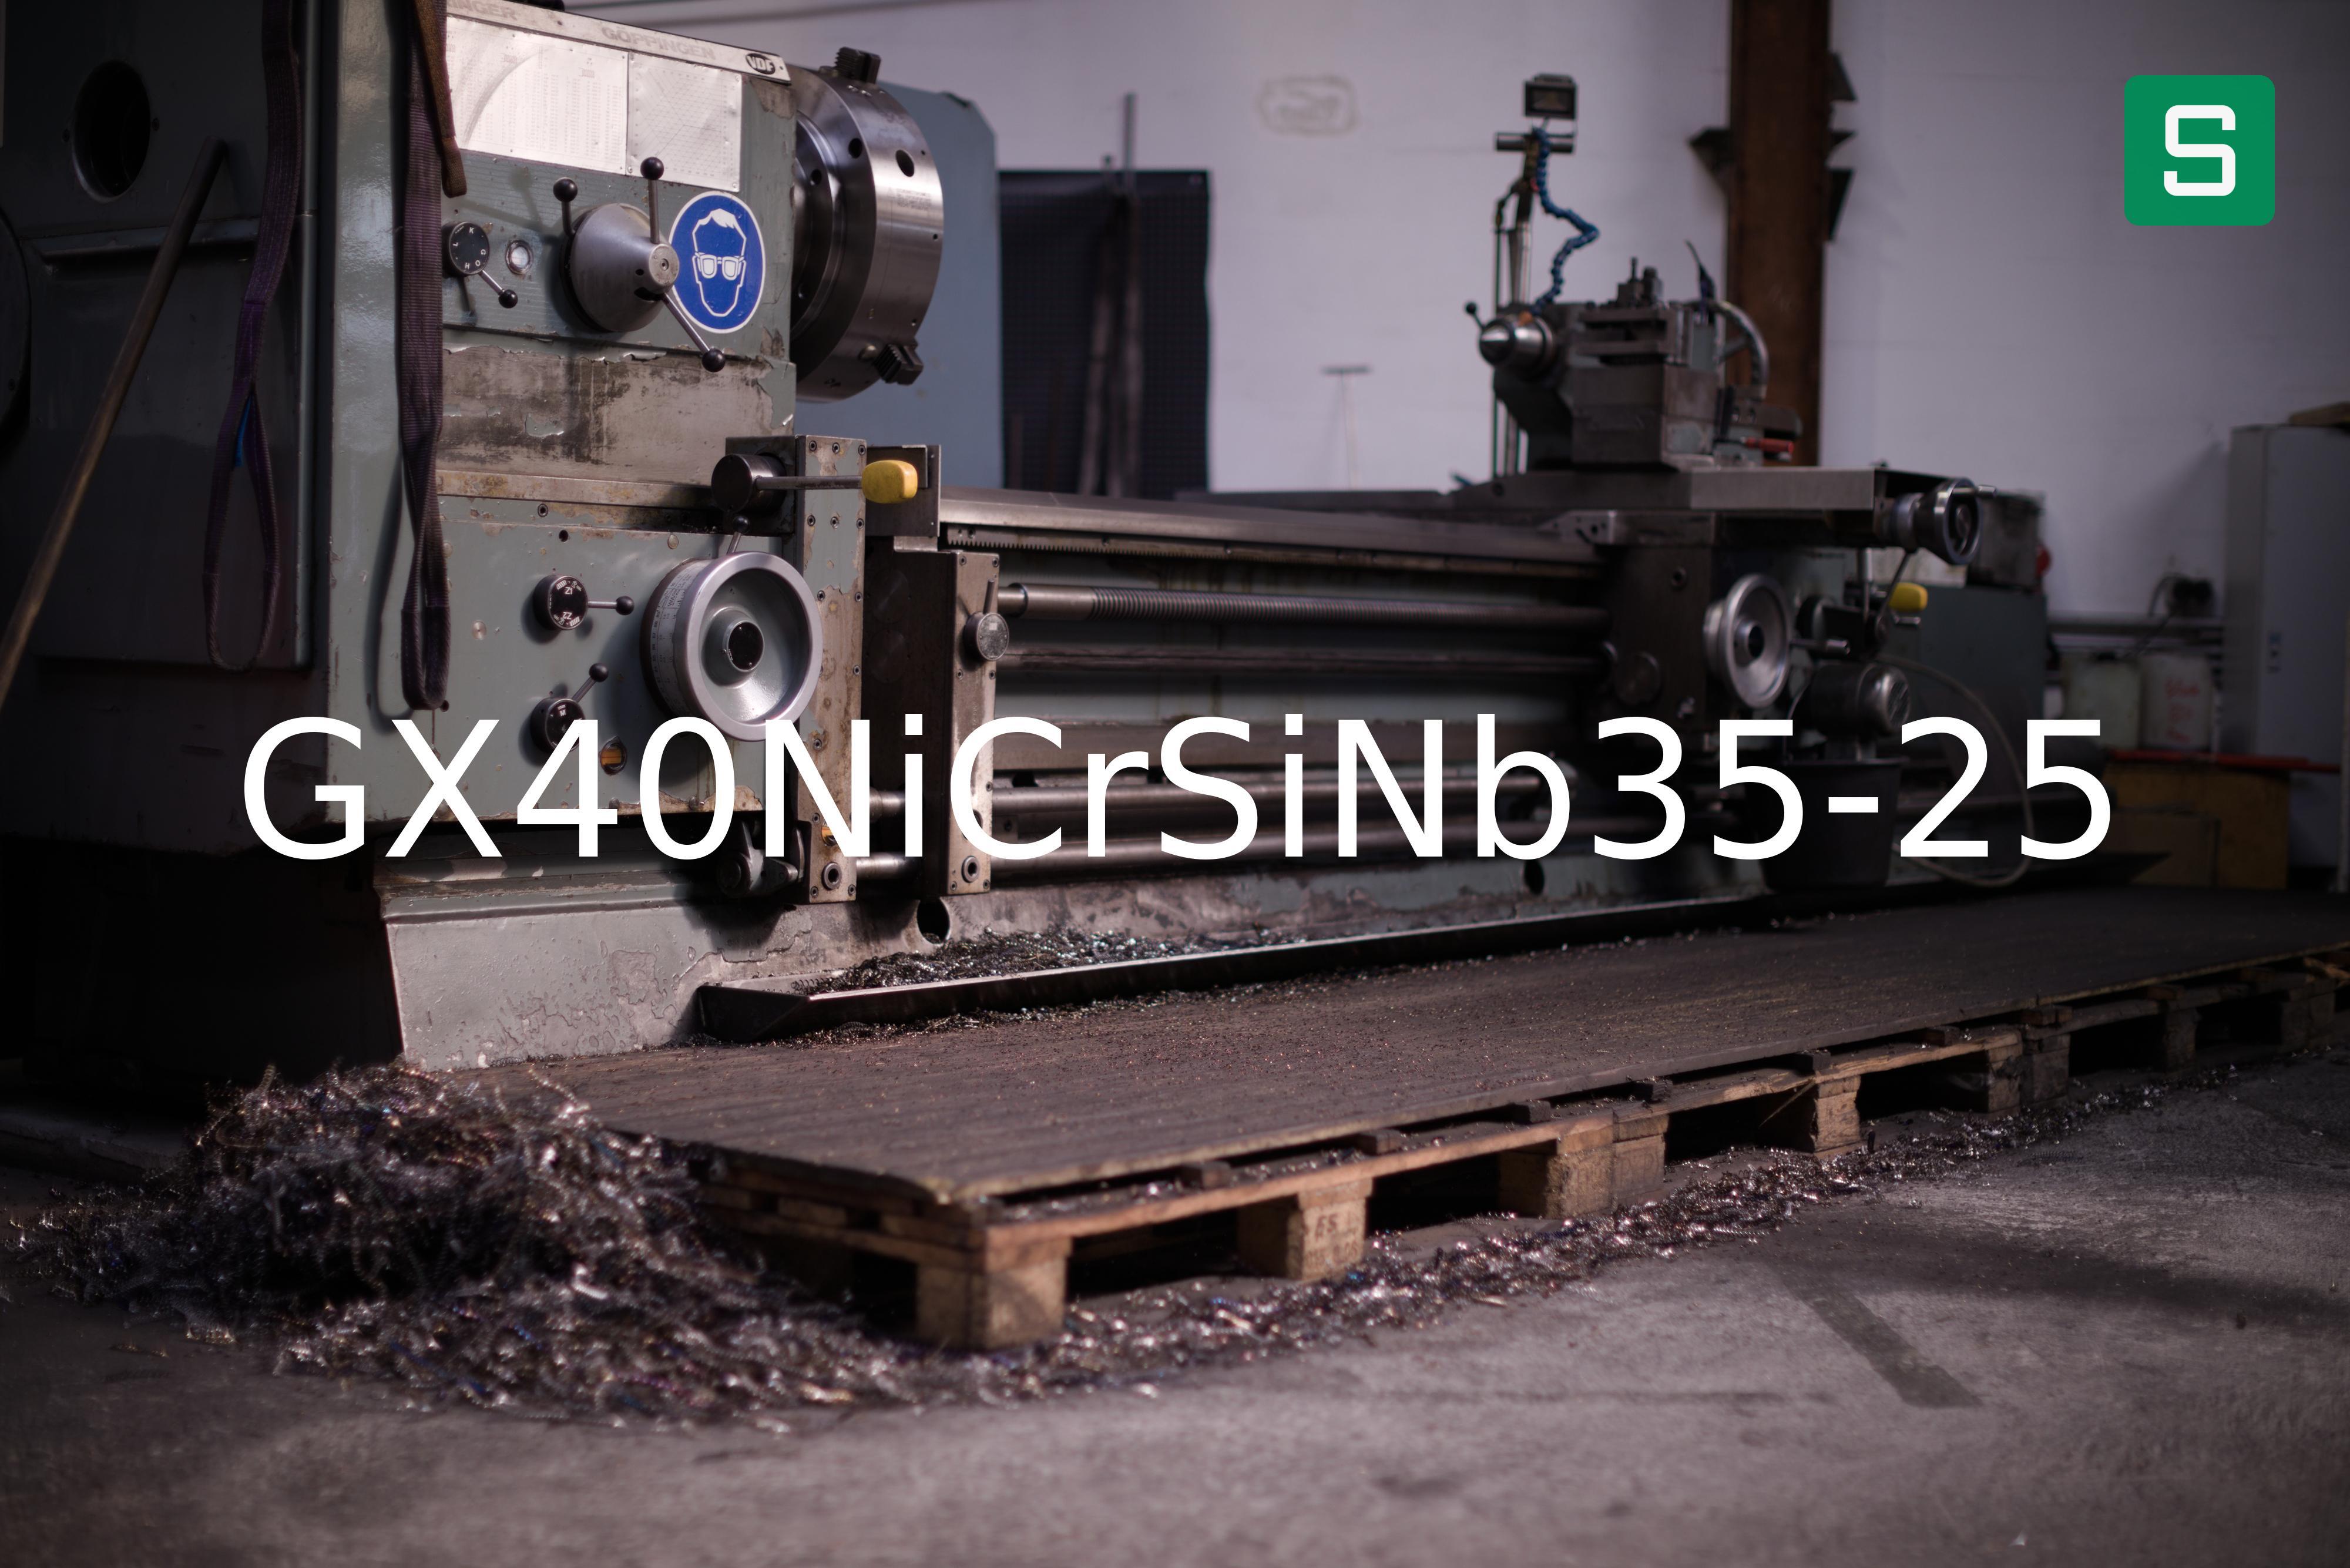 Steel Material: GX40NiCrSiNb35-25